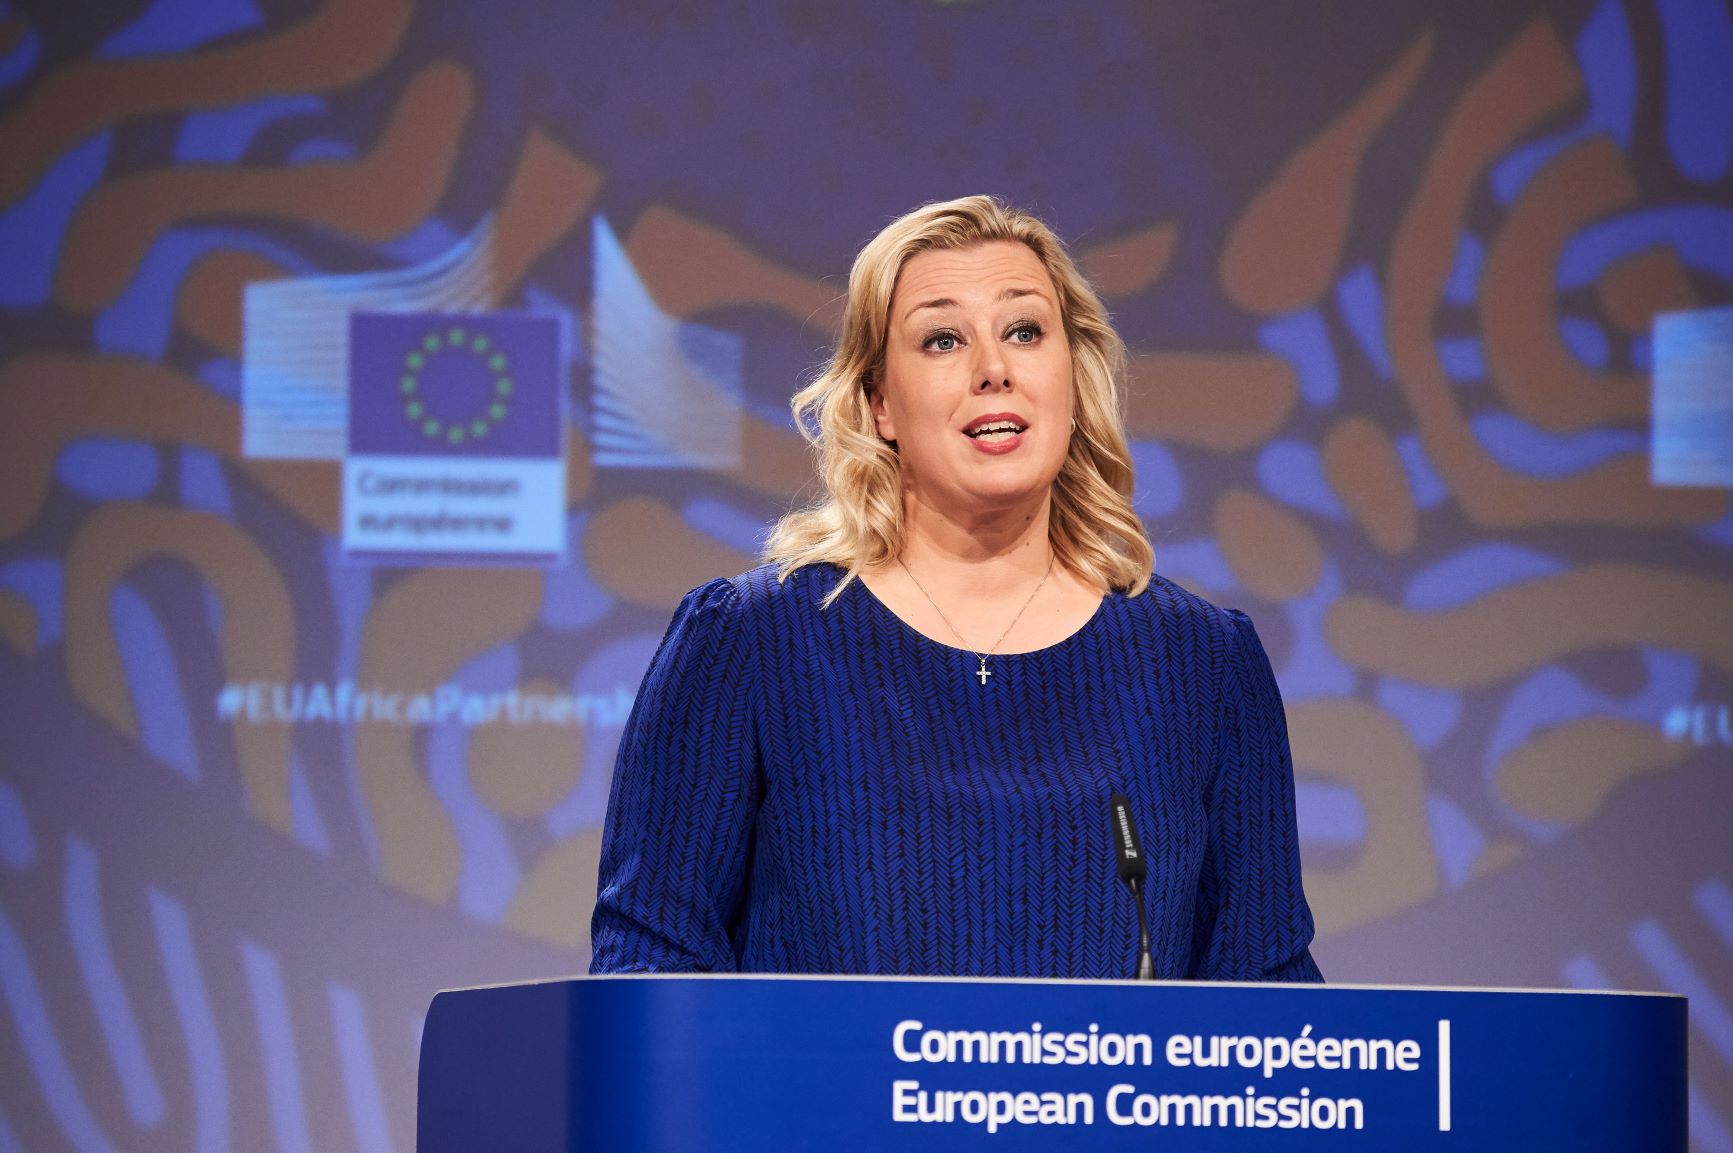 Vaaleahiuksisella naisella on tummansininen asu. Hän seisoo puhujapöntössä, jossa on teksti Comission européenne / European Comission.